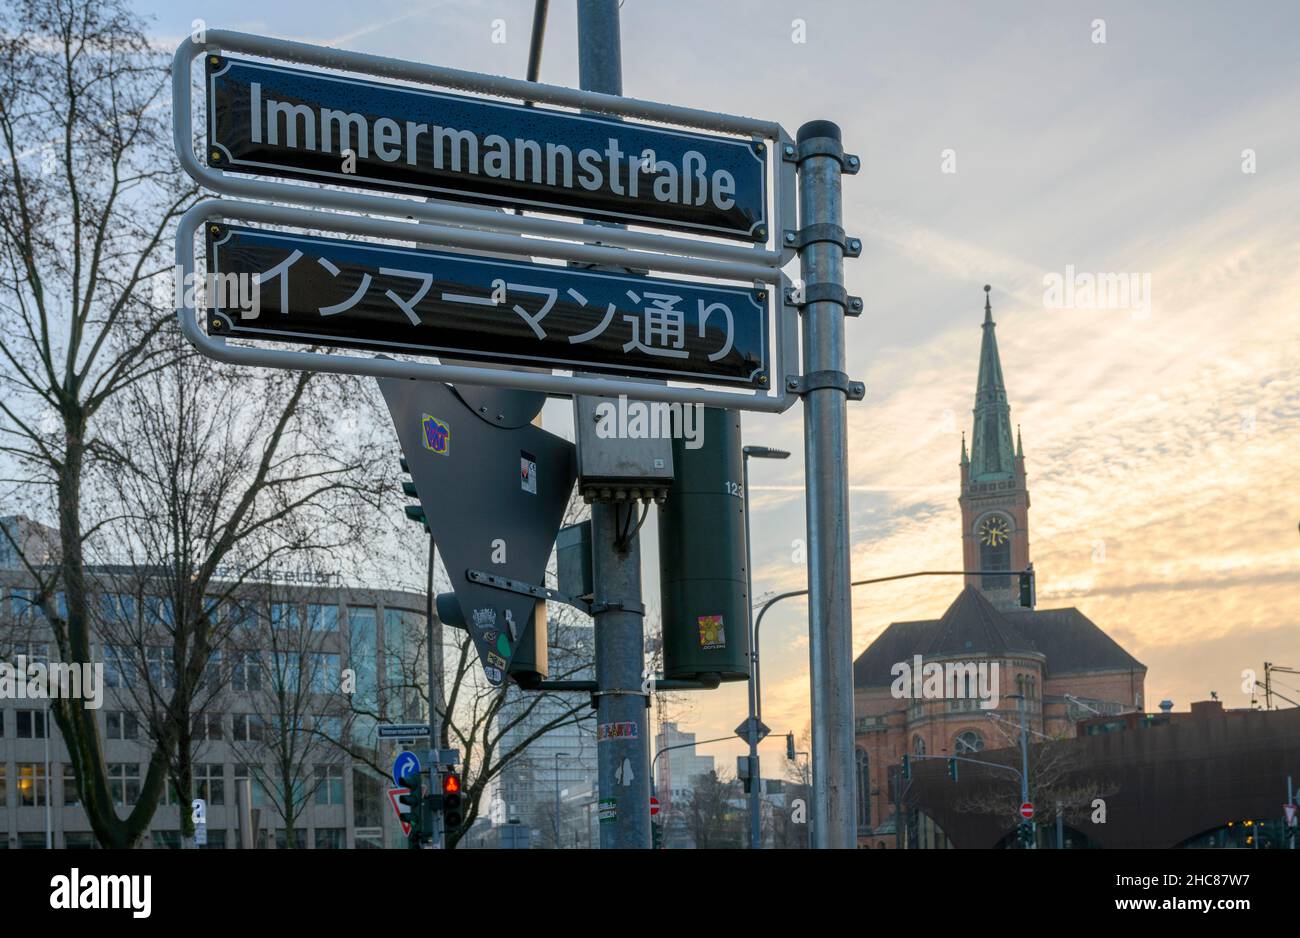 Düsseldorf: Immermannstraße bekommt japanische Straßenschilder -  Ddorf-Aktuell - Internetzeitung Düsseldorf